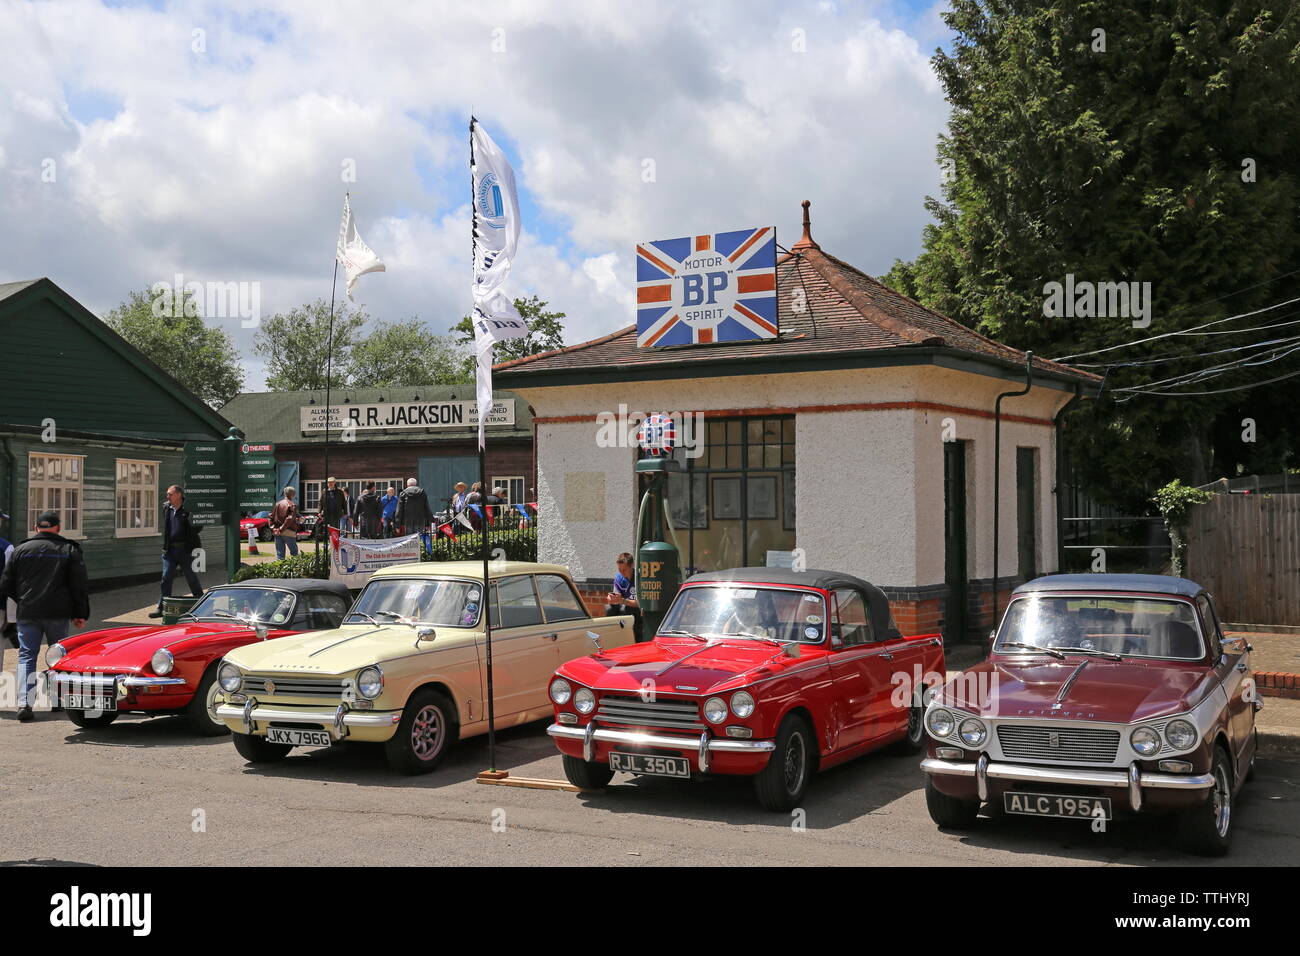 Trionfo di proprietari, display doppio dodici Motorsport Festival 2019, Brooklands Museum, Weybridge, Surrey, Inghilterra, Gran Bretagna, Regno Unito, Europa Foto Stock